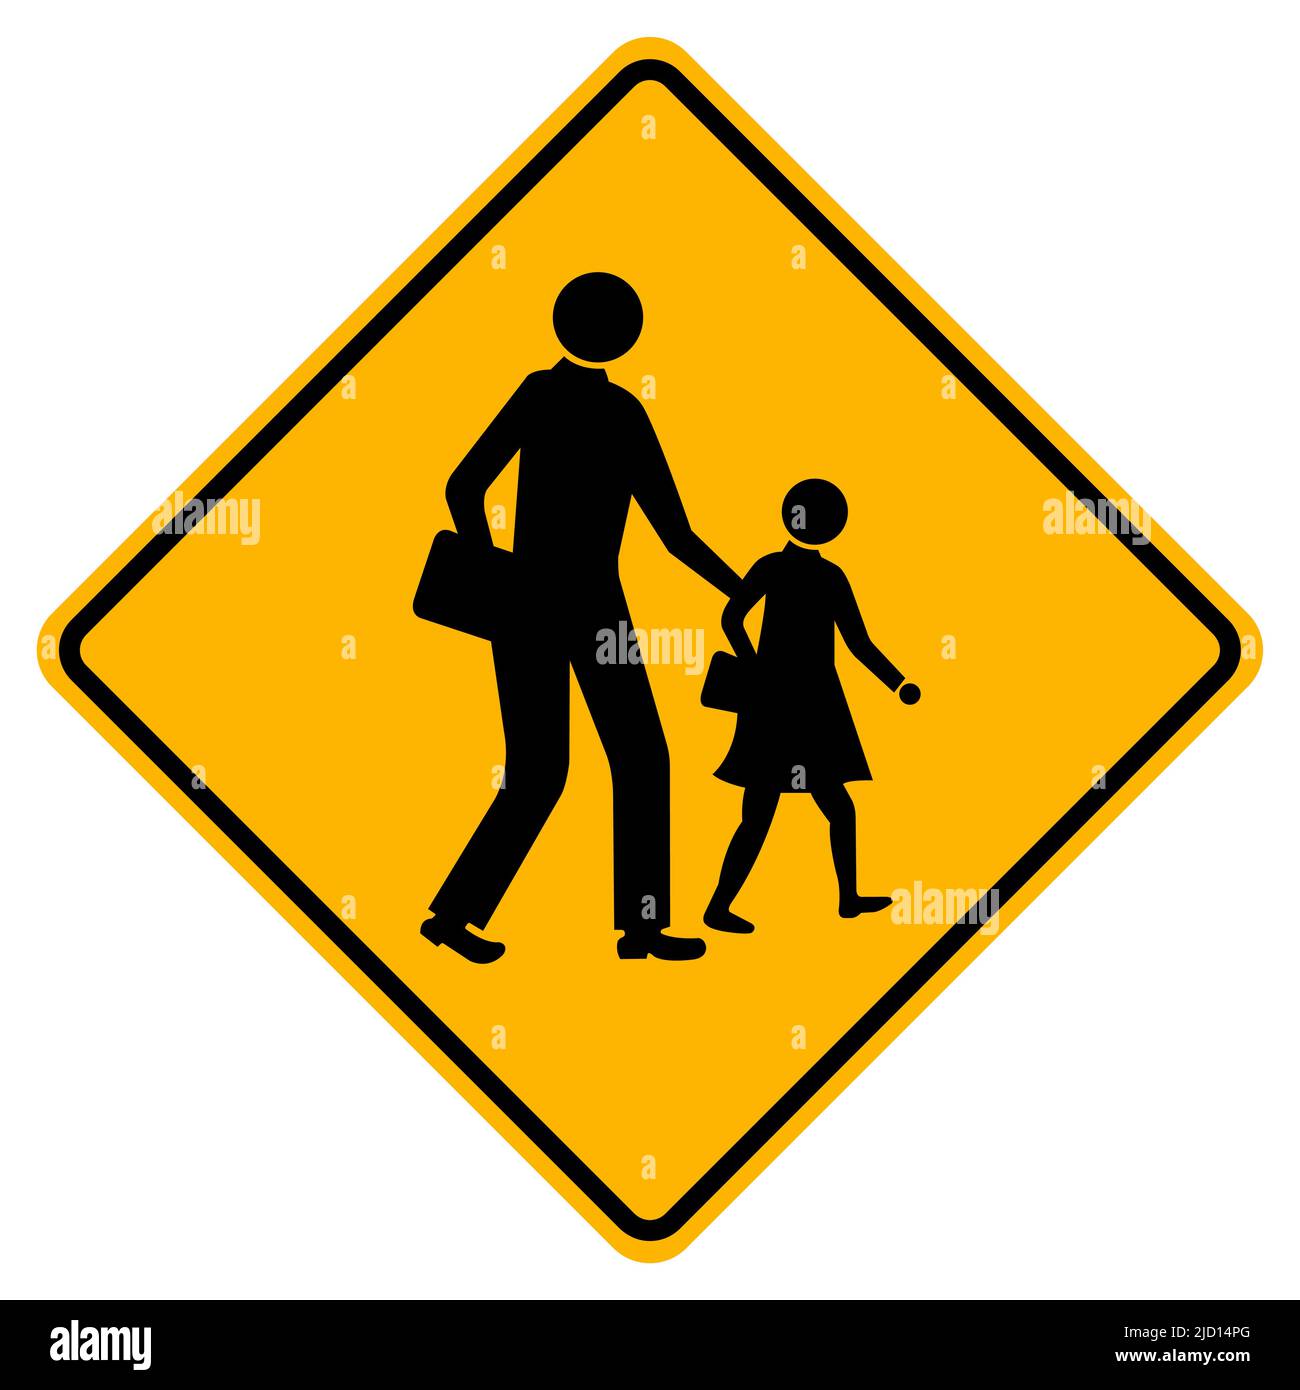 Warning School Traffic Road Sign Stock Vector